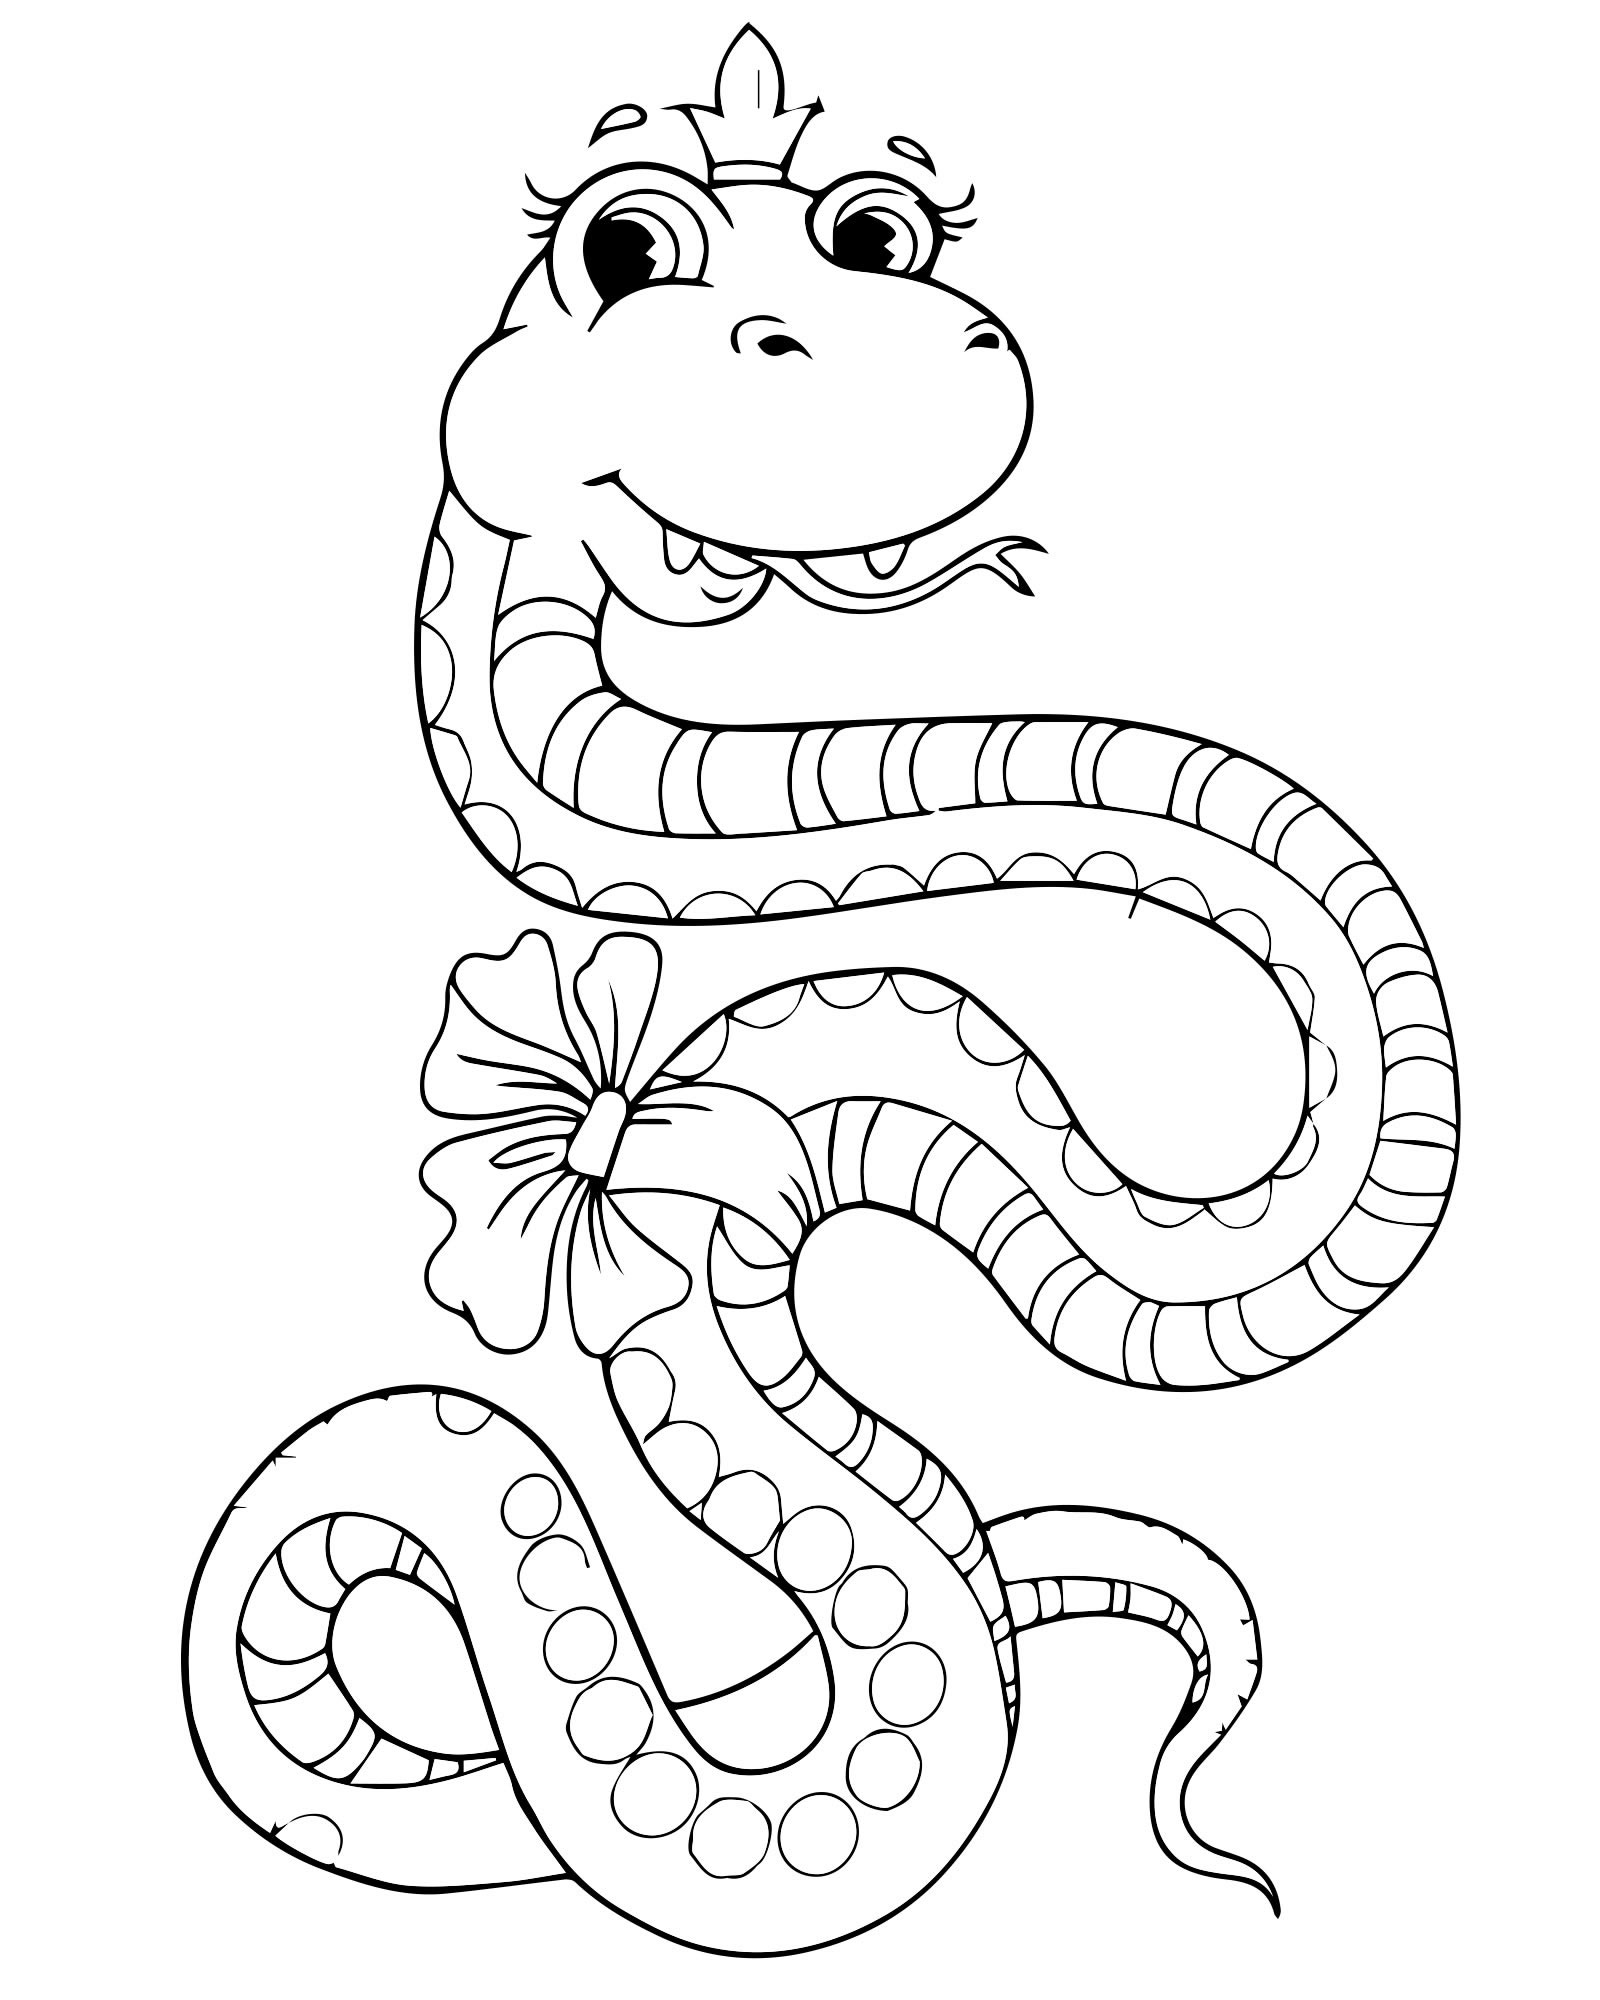 Змея принцесса раскраска для детей